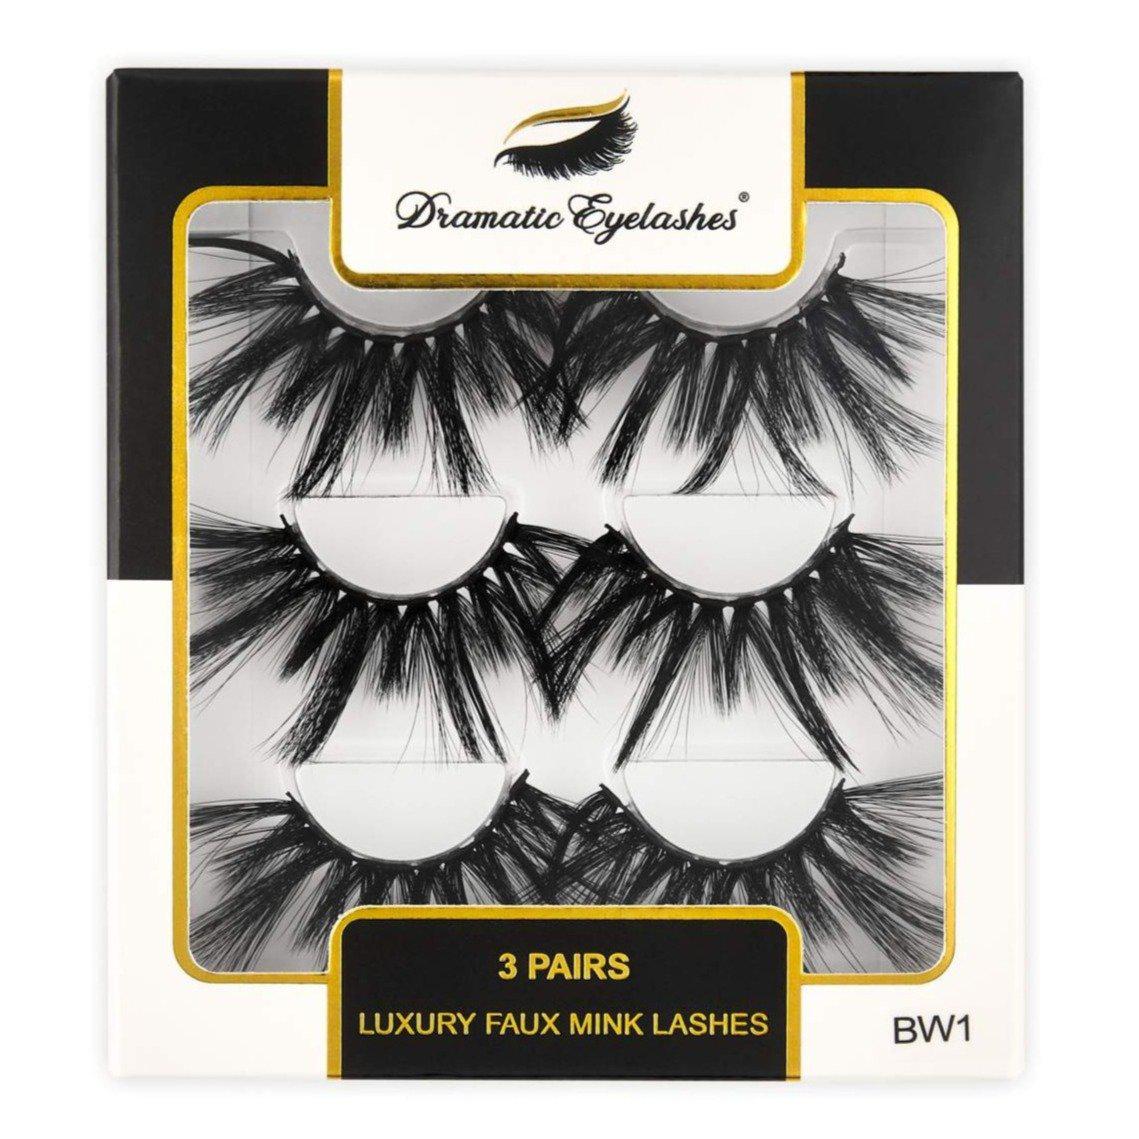 BW1: Multipack (3 Pairs) Luxury Faux 3D Mink Dramatic Eyelashes-Dramatic Eyelashes